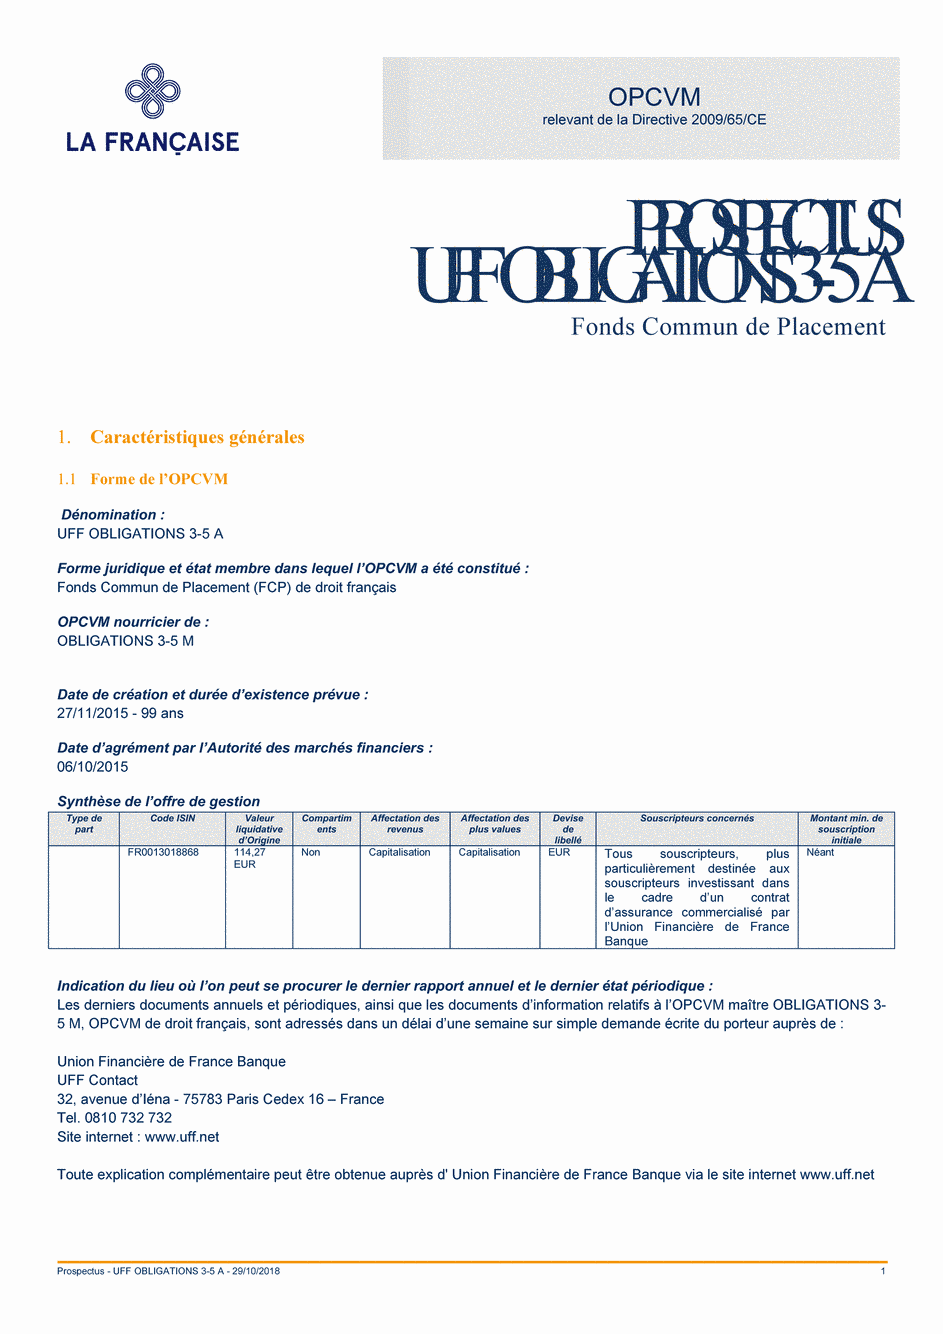 Prospectus UFF Obligations 3-5 A - 29/10/2018 - Français